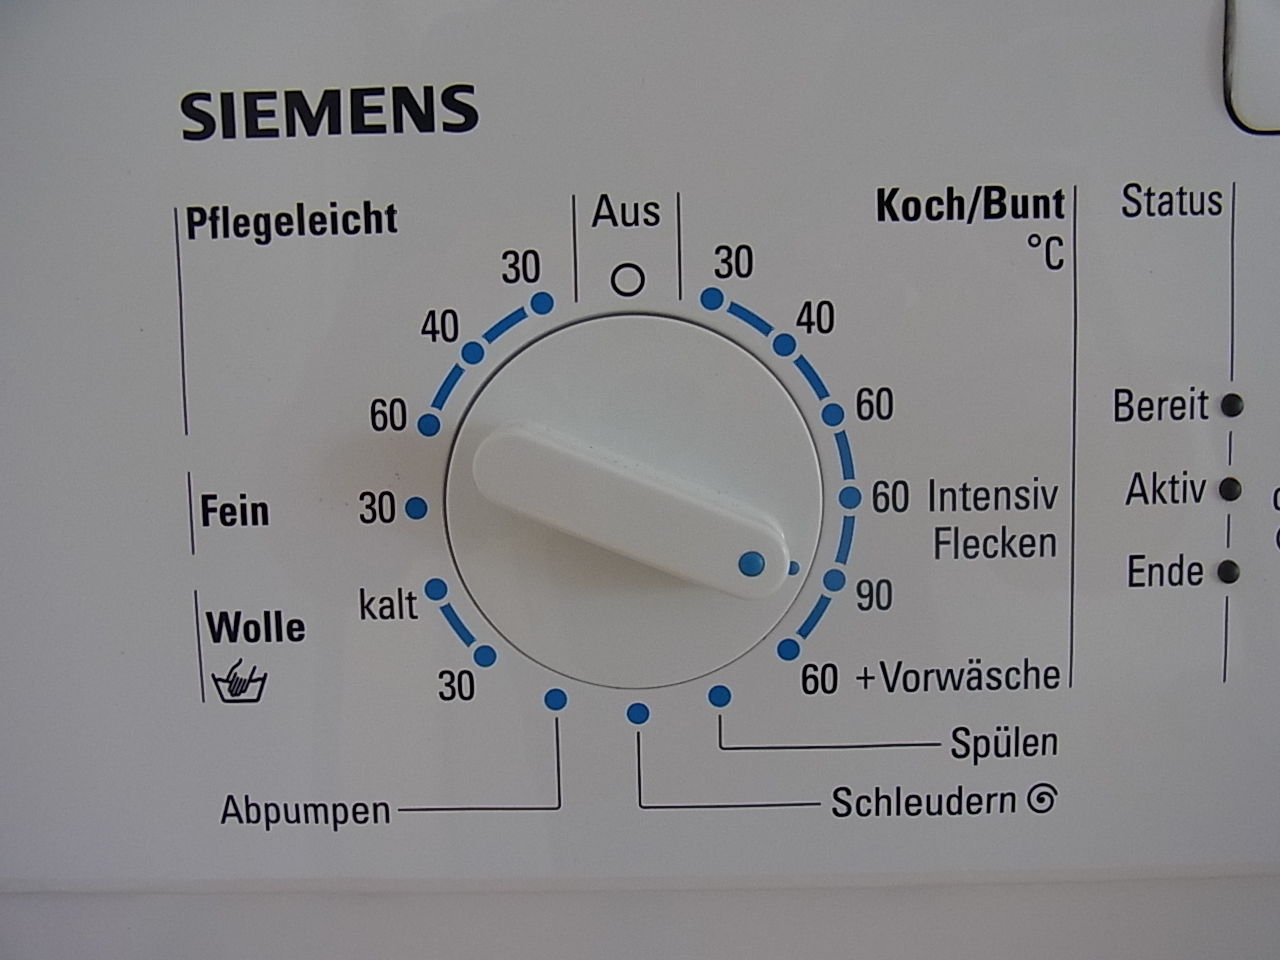 Spin перевод стиральная. Стиральная машинка на немецком языке. Abpumpen в стиральной машине. Значки на стиральной машине Сименс. Wolle на стиральной машине.